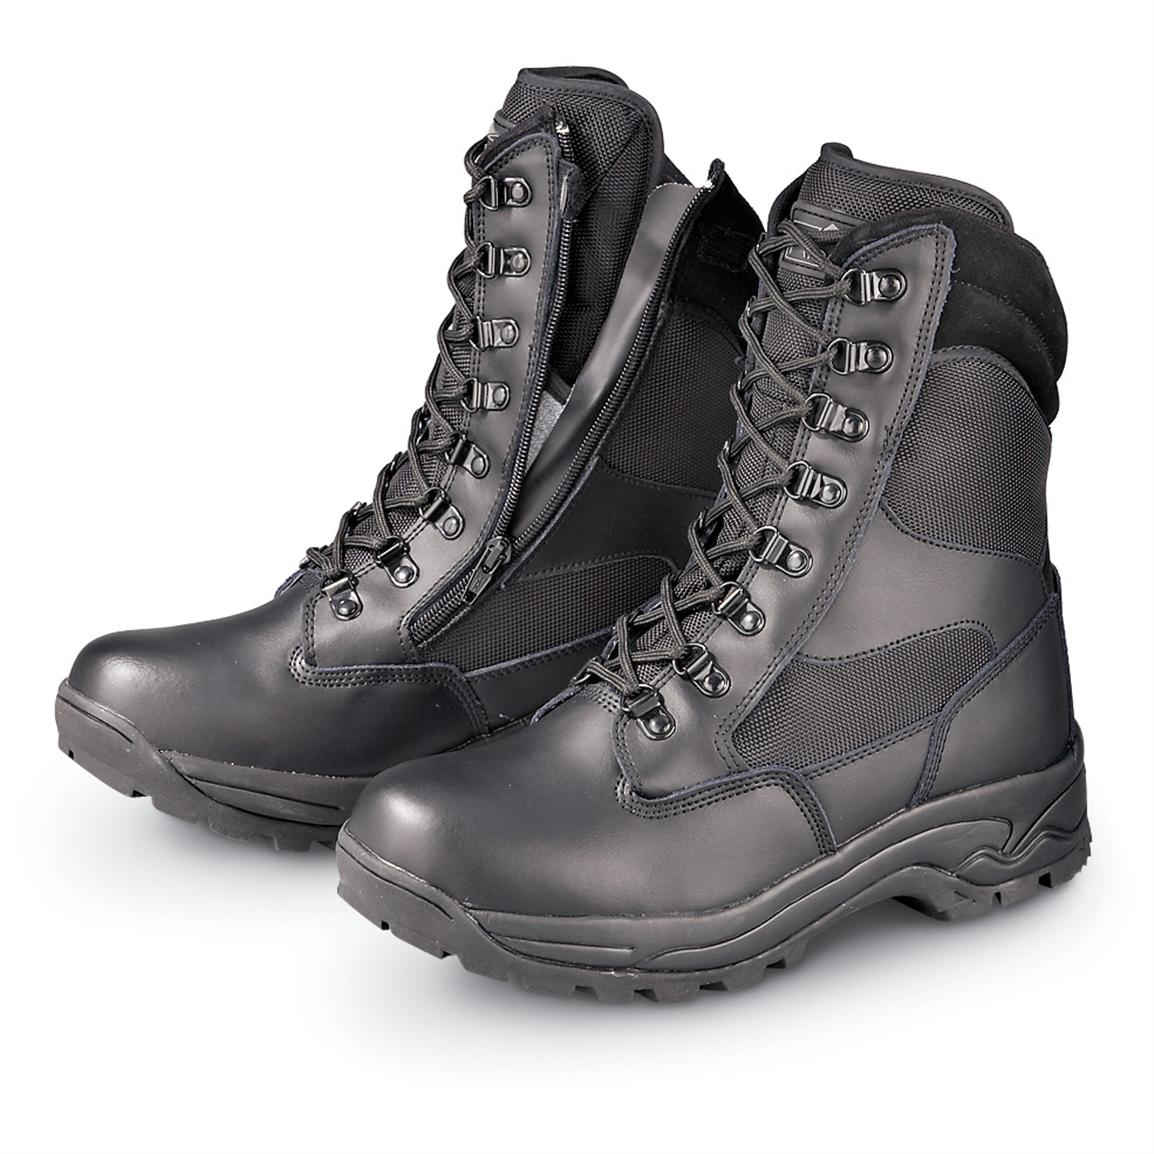 Men's Ridge® BlackHawk Boots, Black - 128849, Combat & Tactical Boots ...